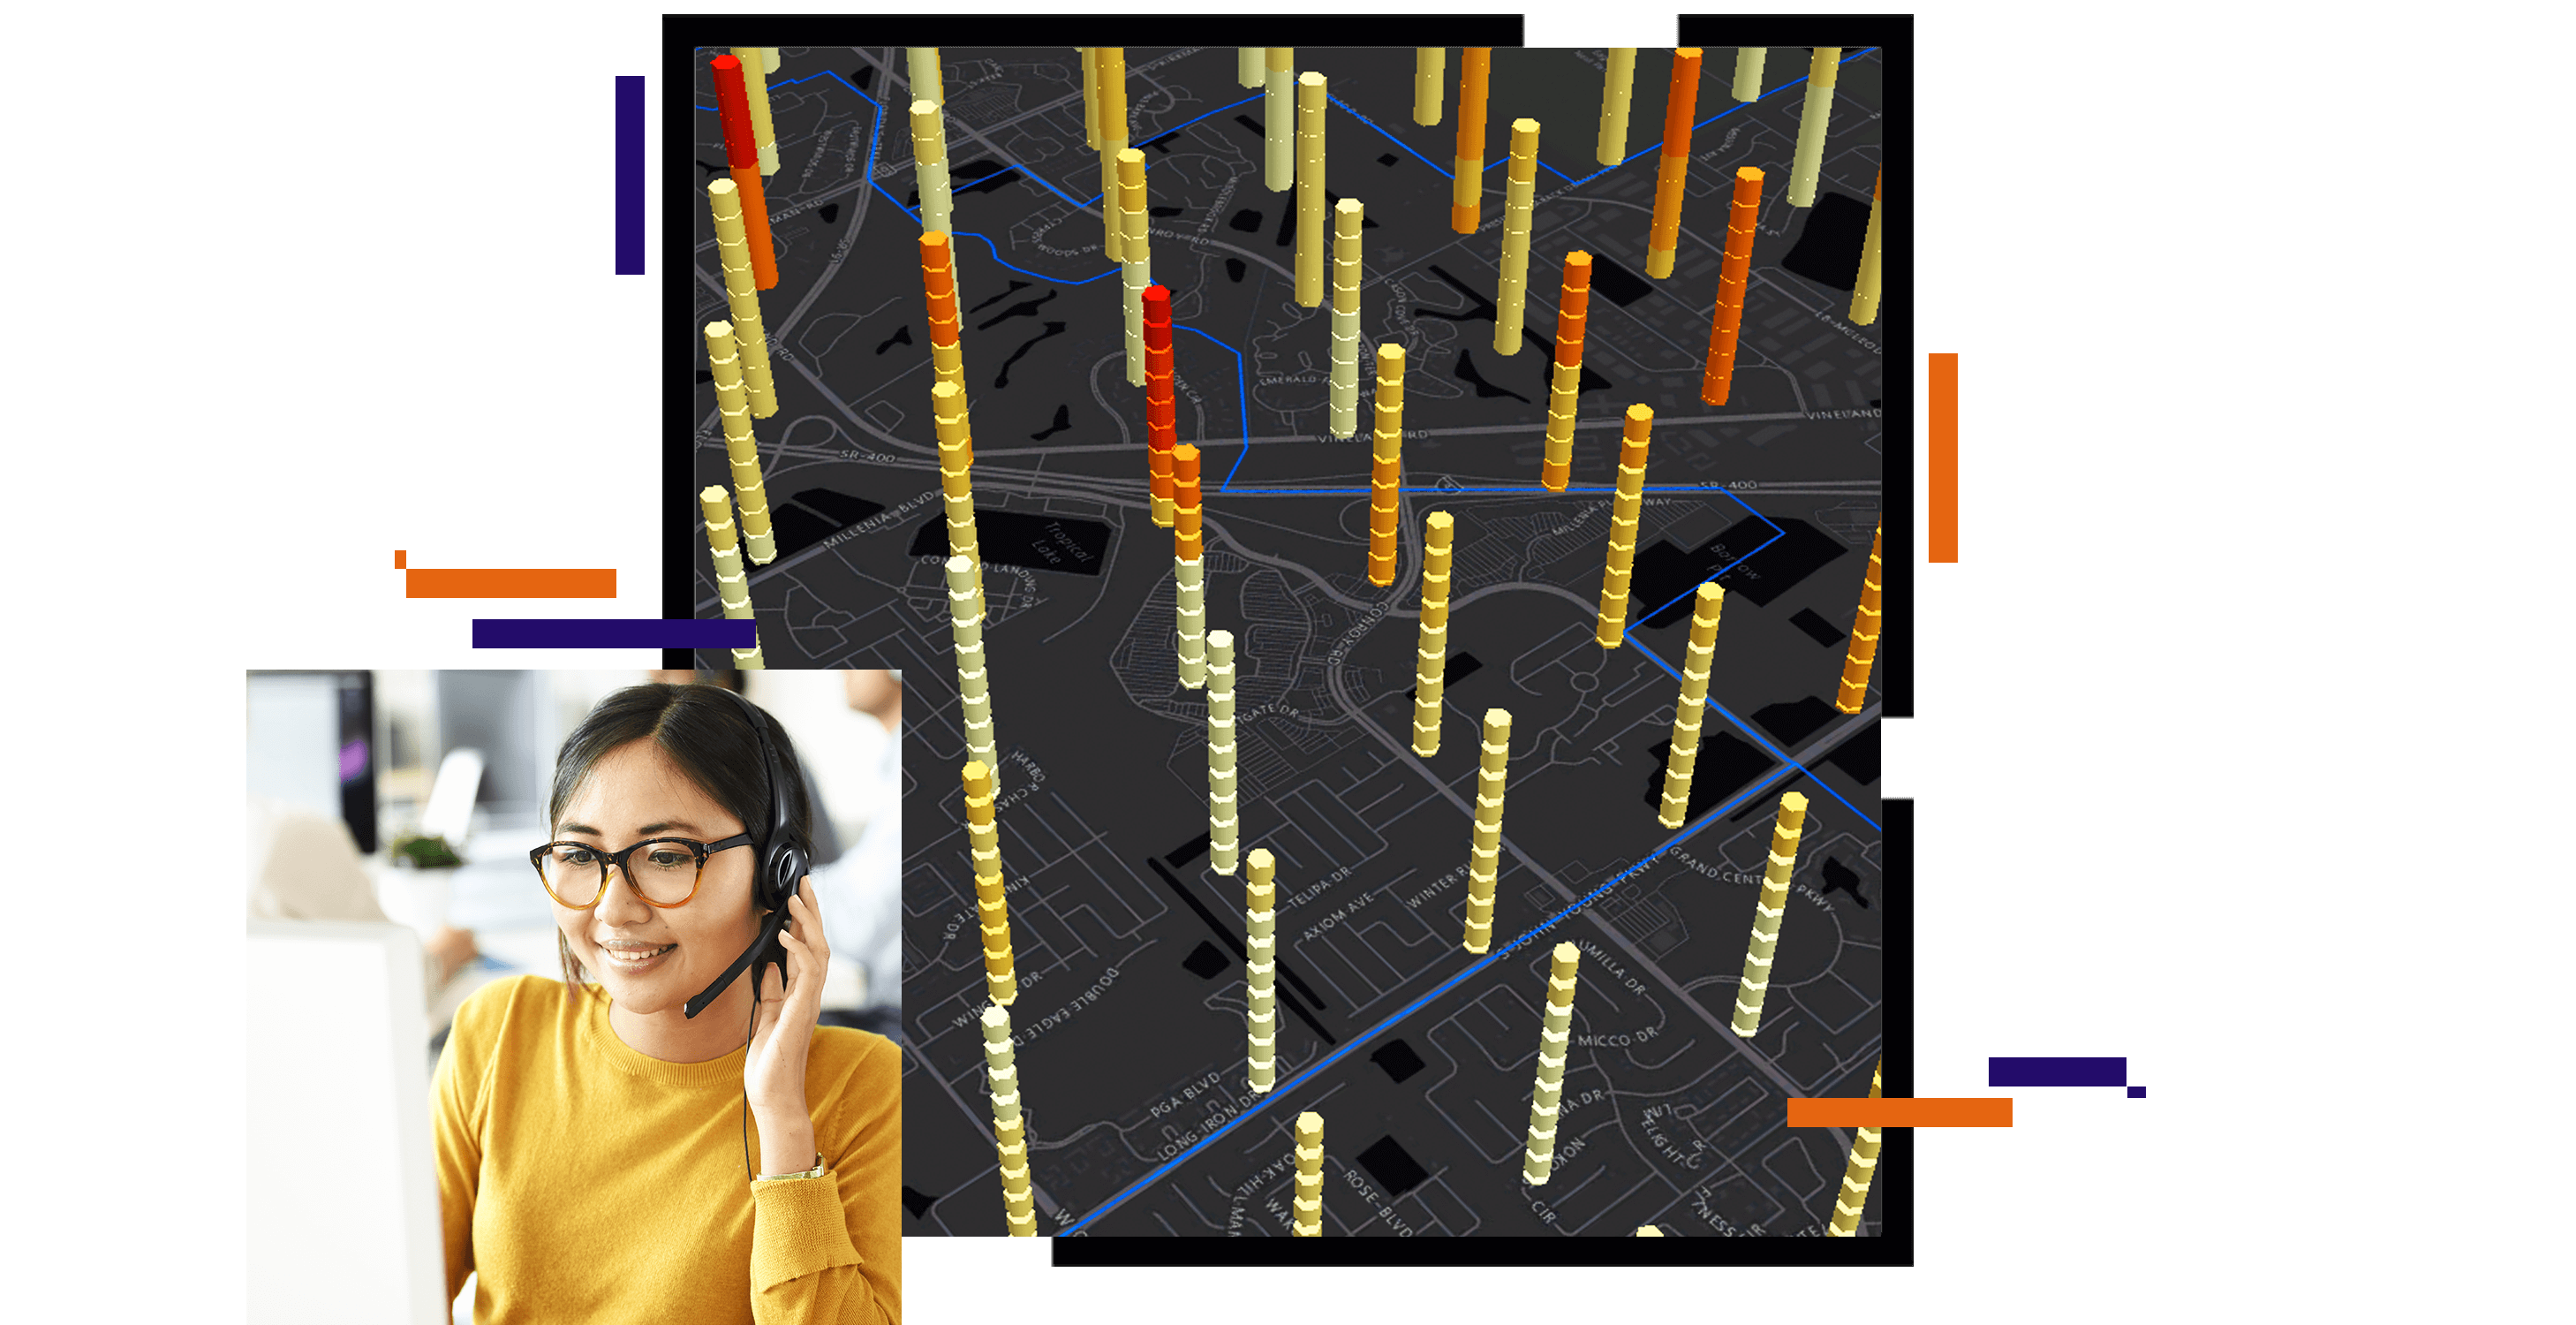 Mapa de concentración en gris oscuro con puntos mostrados como barras amarillas que surgen de la superficie del mapa, junto a una foto de una persona sonriente con cuello alto amarillo que mira la pantalla de un ordenador y lleva unos auriculares